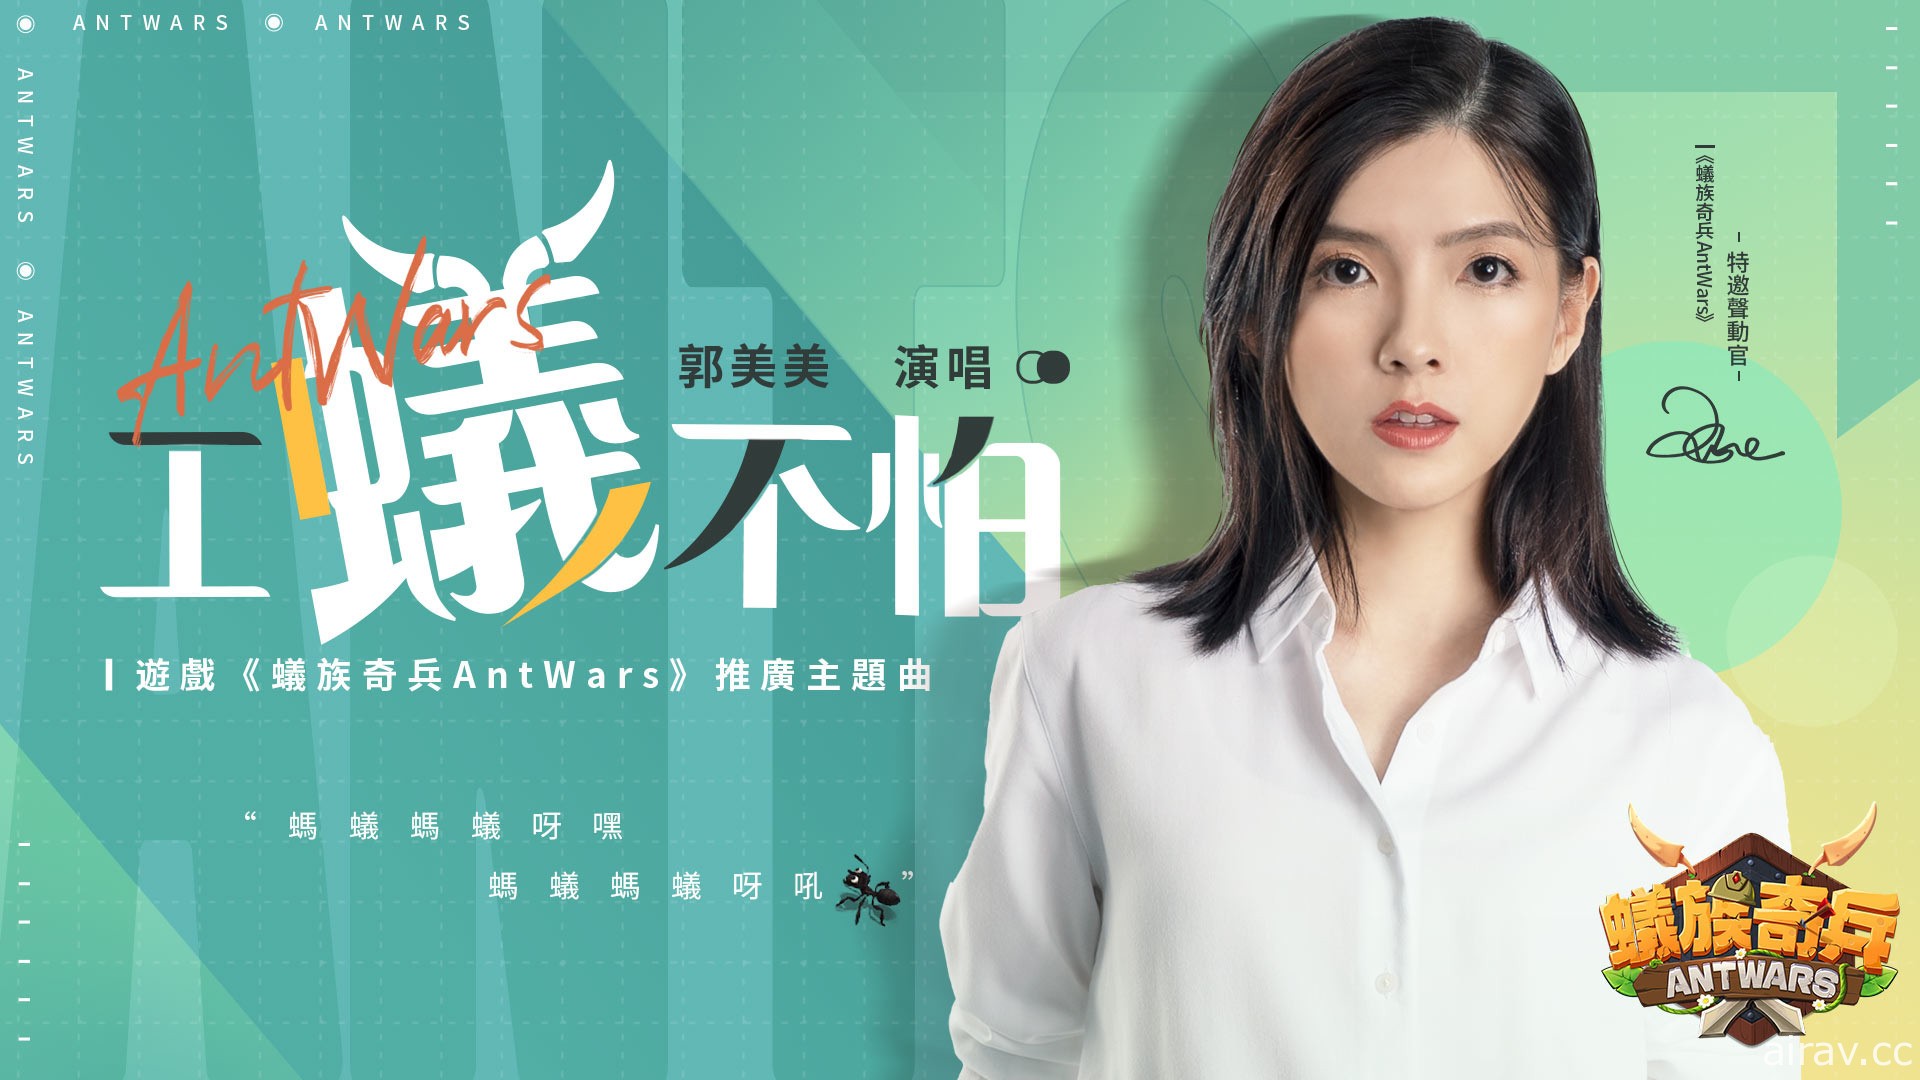 《蟻族奇兵 AntWars》宣傳 MV 曝光 郭美美演唱主題曲「工蟻不怕」